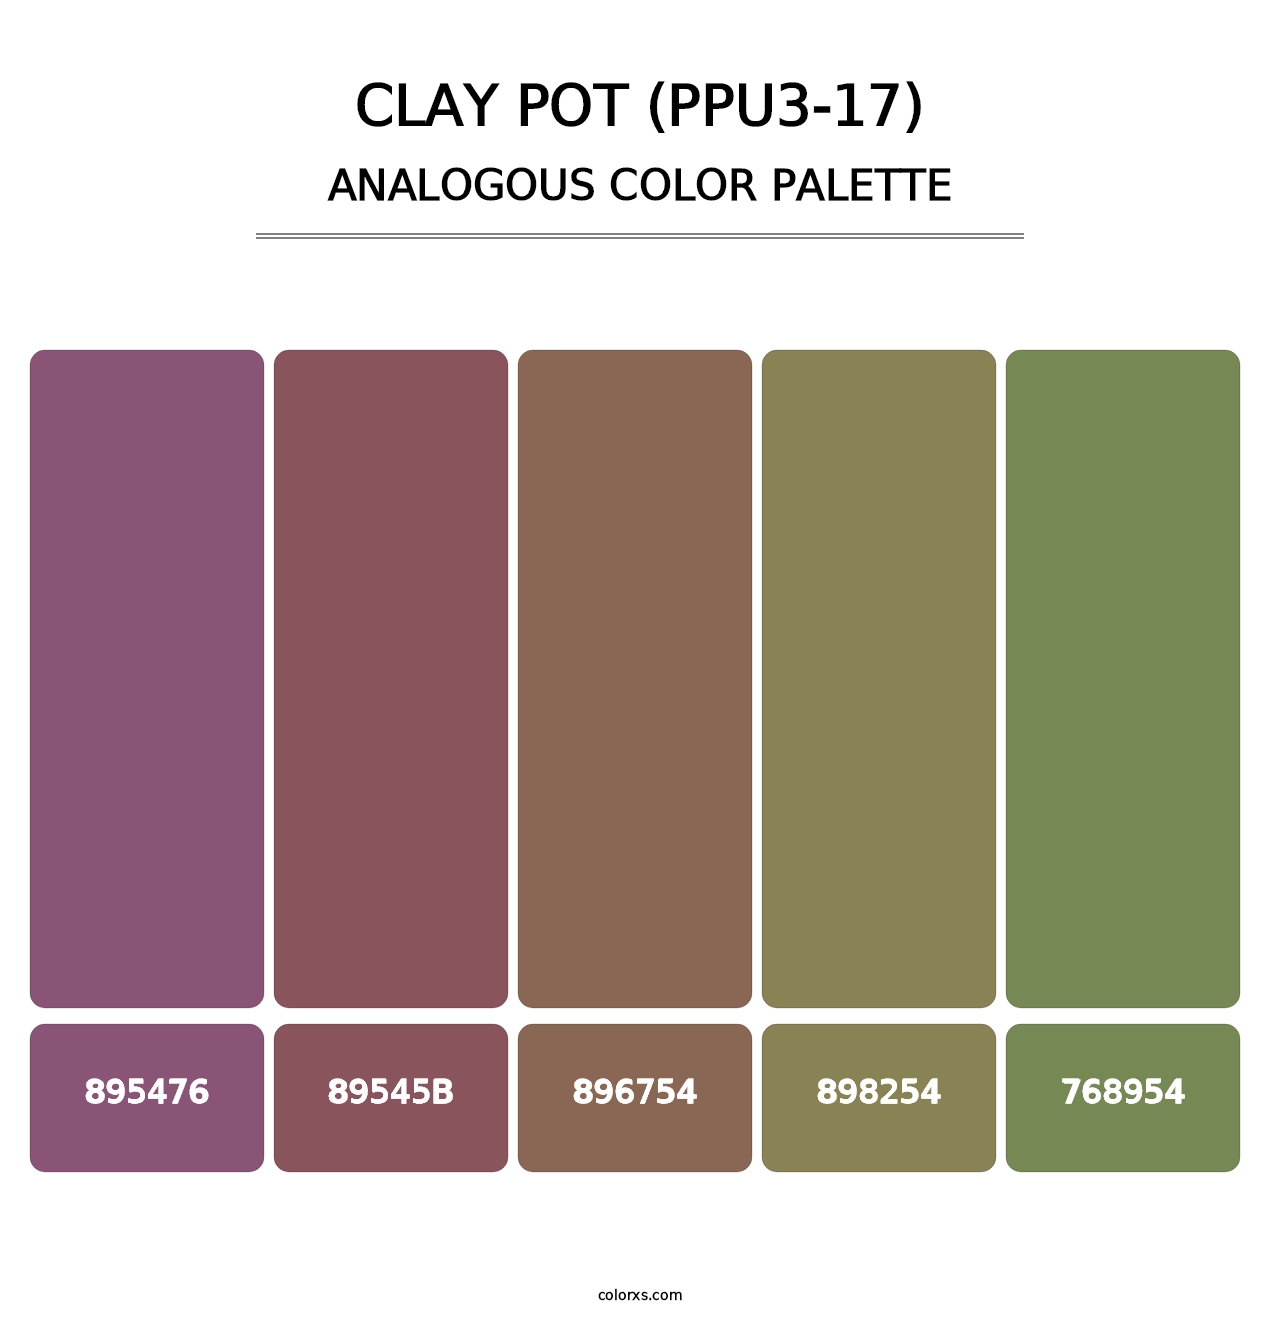 Clay Pot (PPU3-17) - Analogous Color Palette